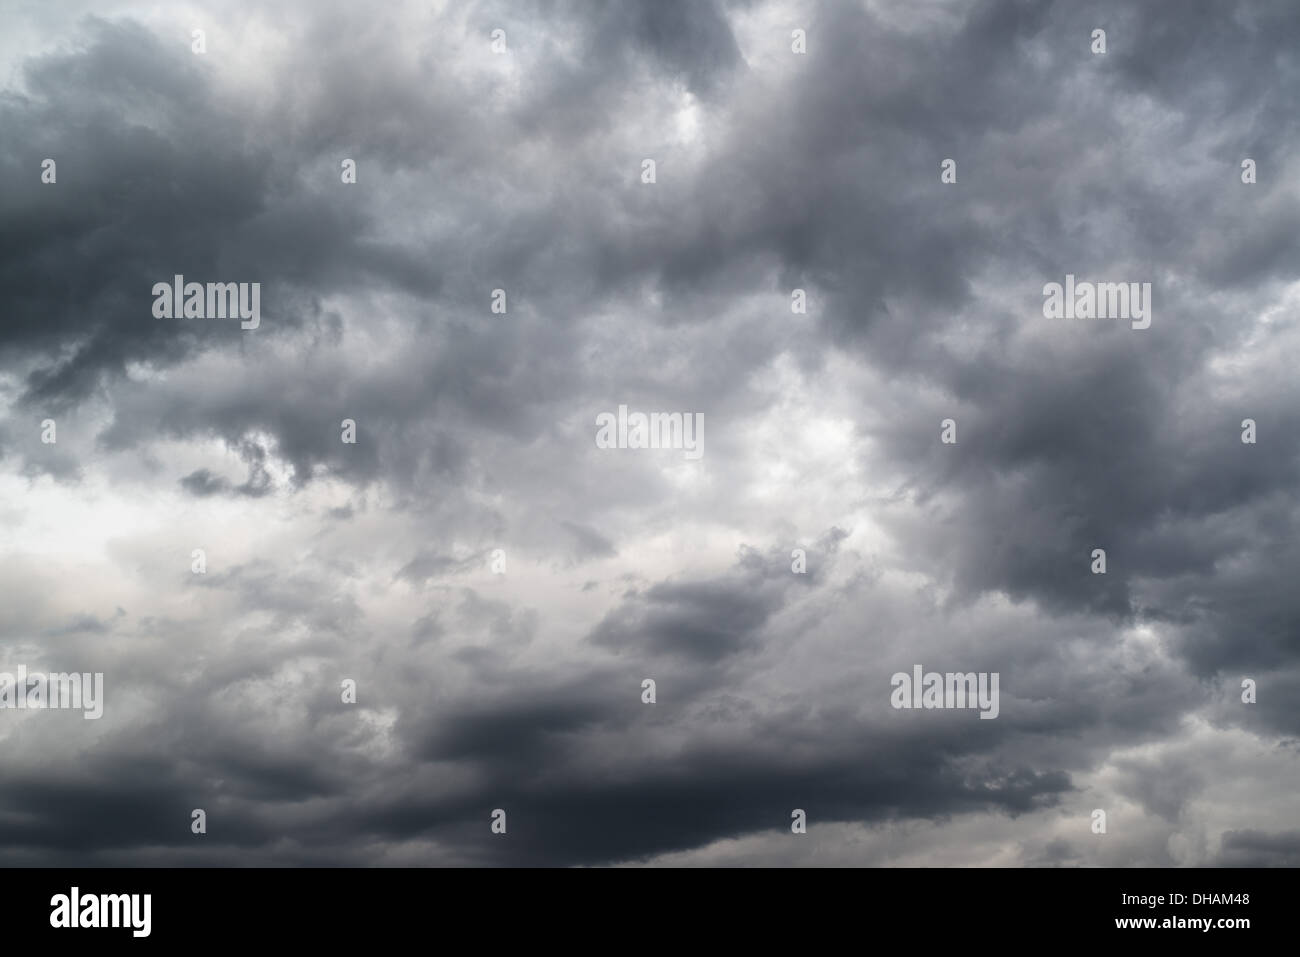 Fuerte tormenta nubes llevando la lluvia fría de invierno Foto de stock